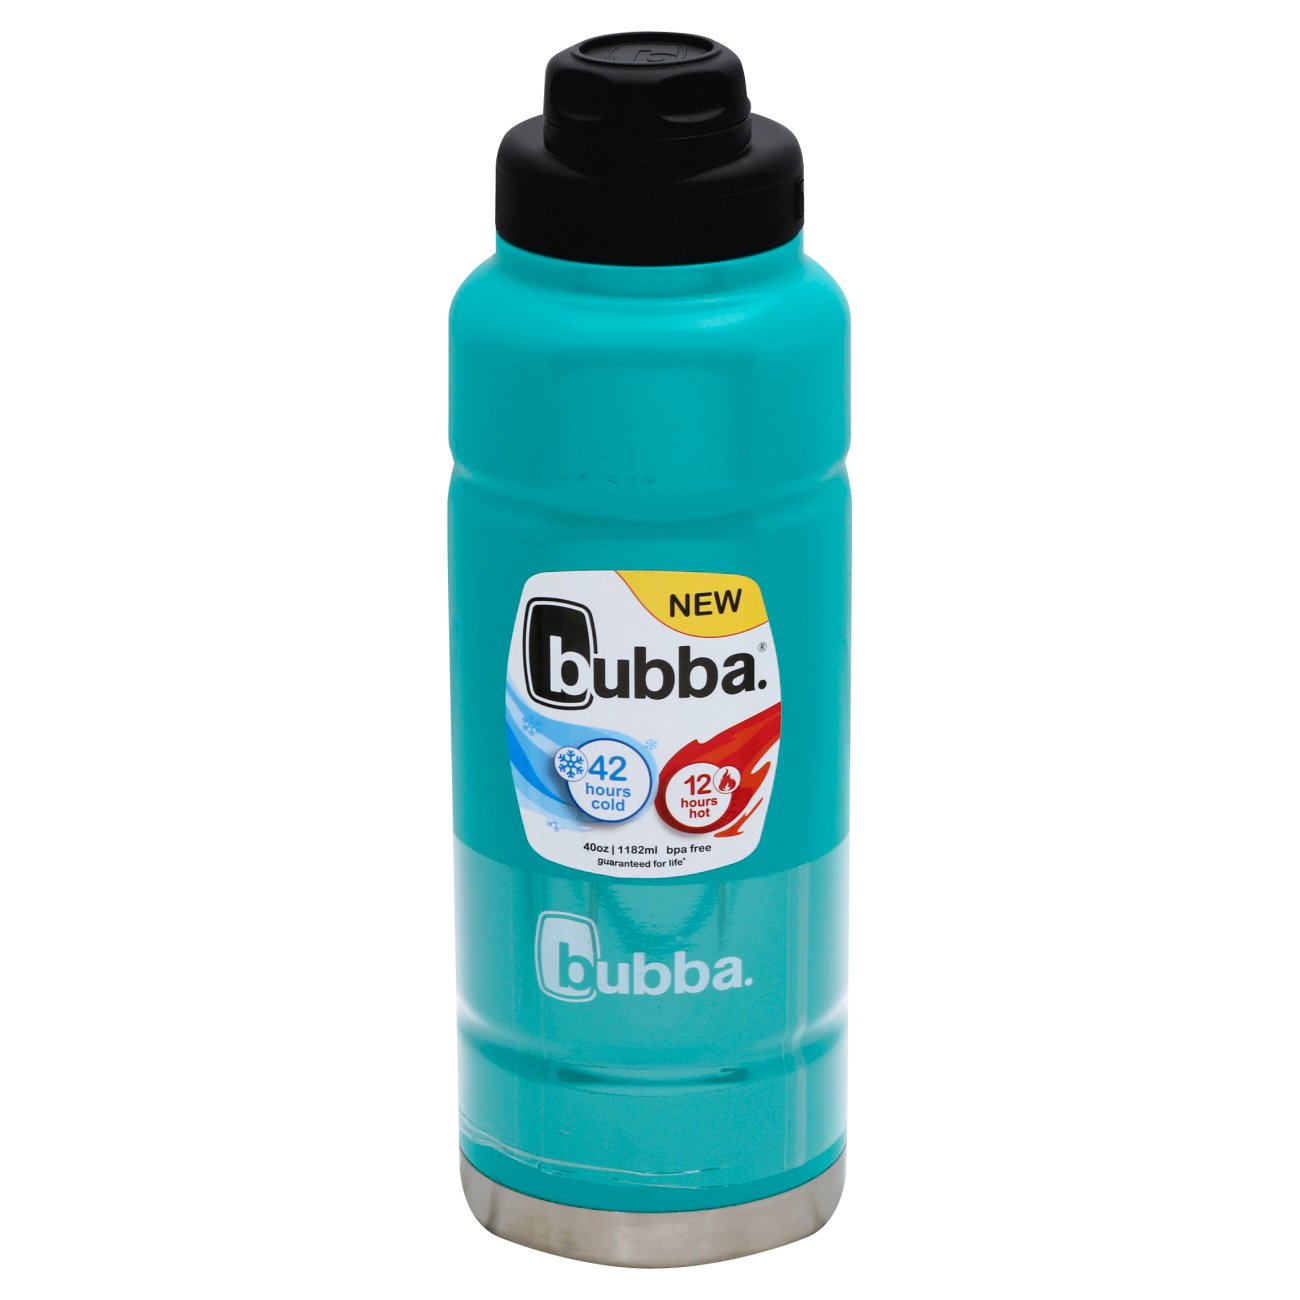 Bubba Trailblazer - Drinkware